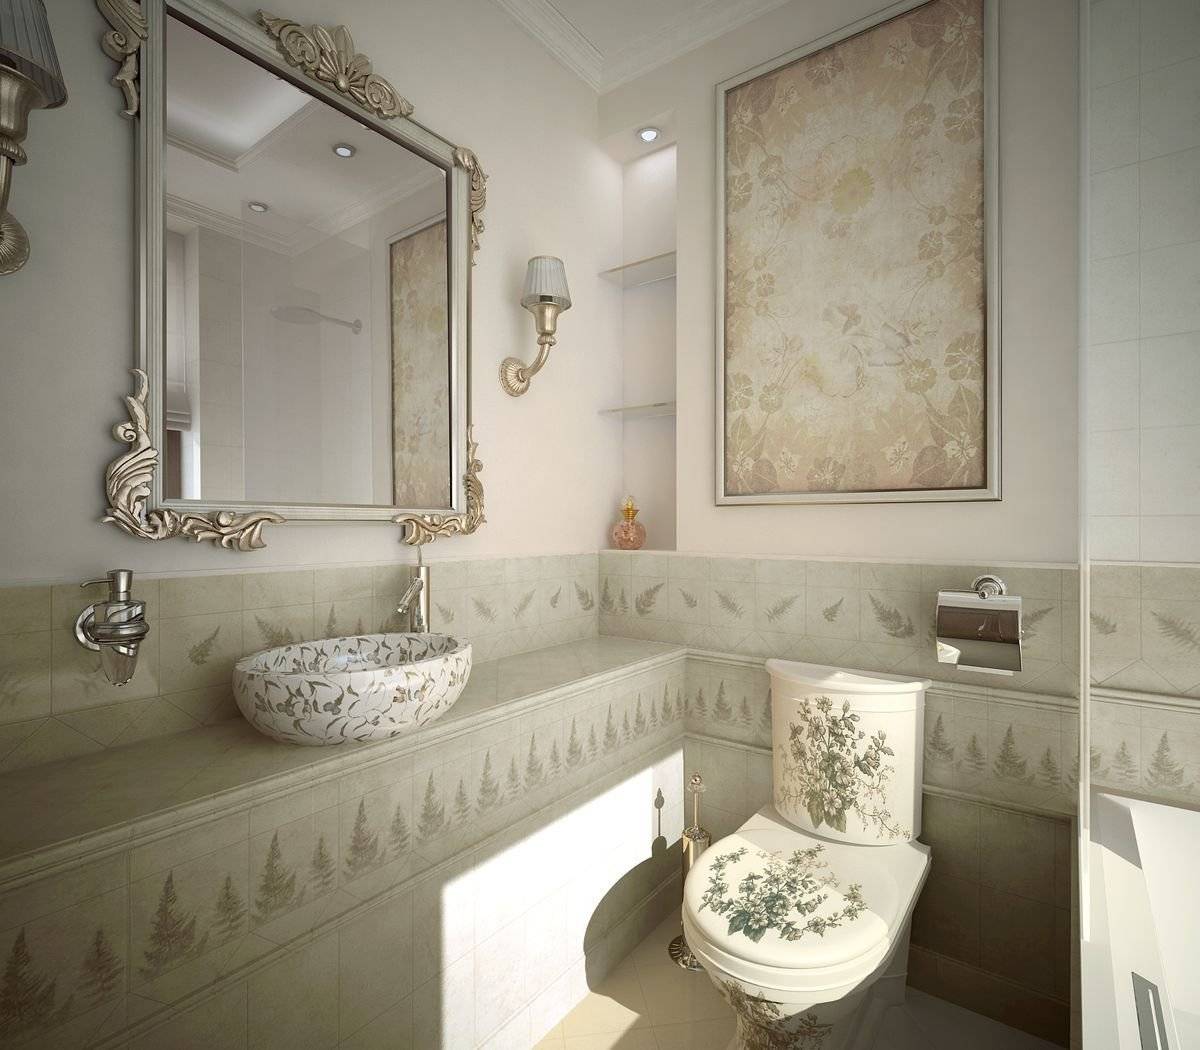 Ванная комната в стиле прованс, санузел с туалетом - 30 фото